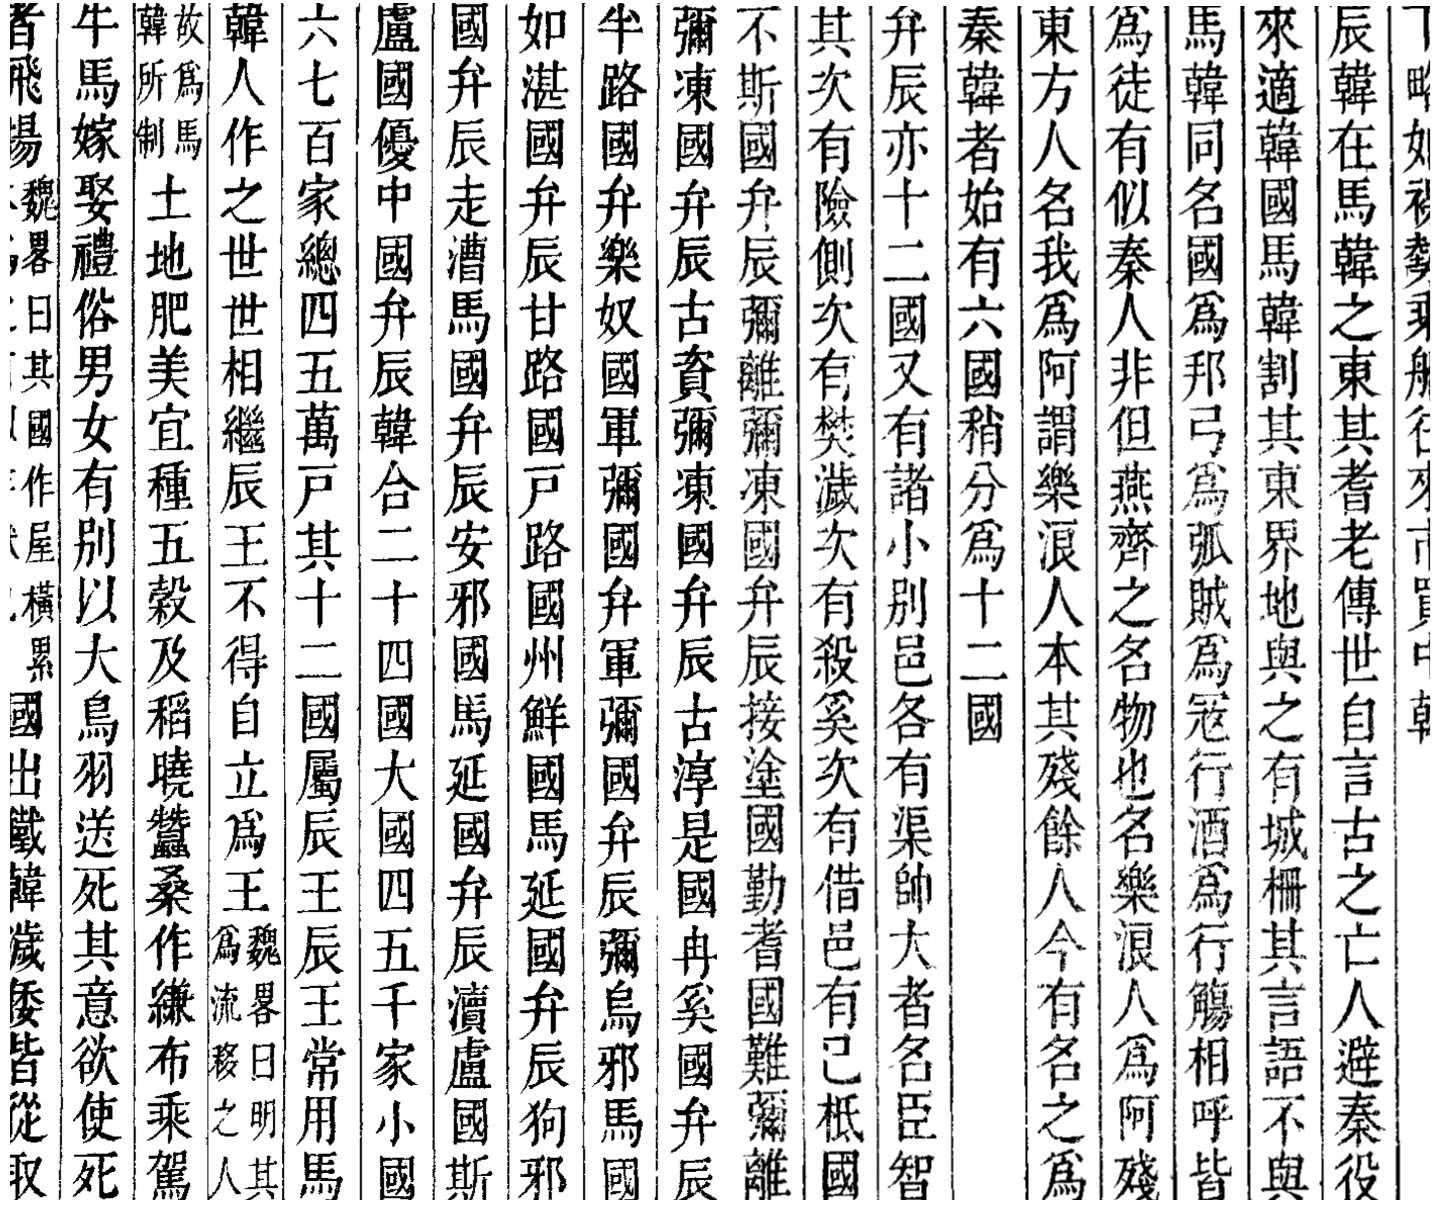  三國志(289)